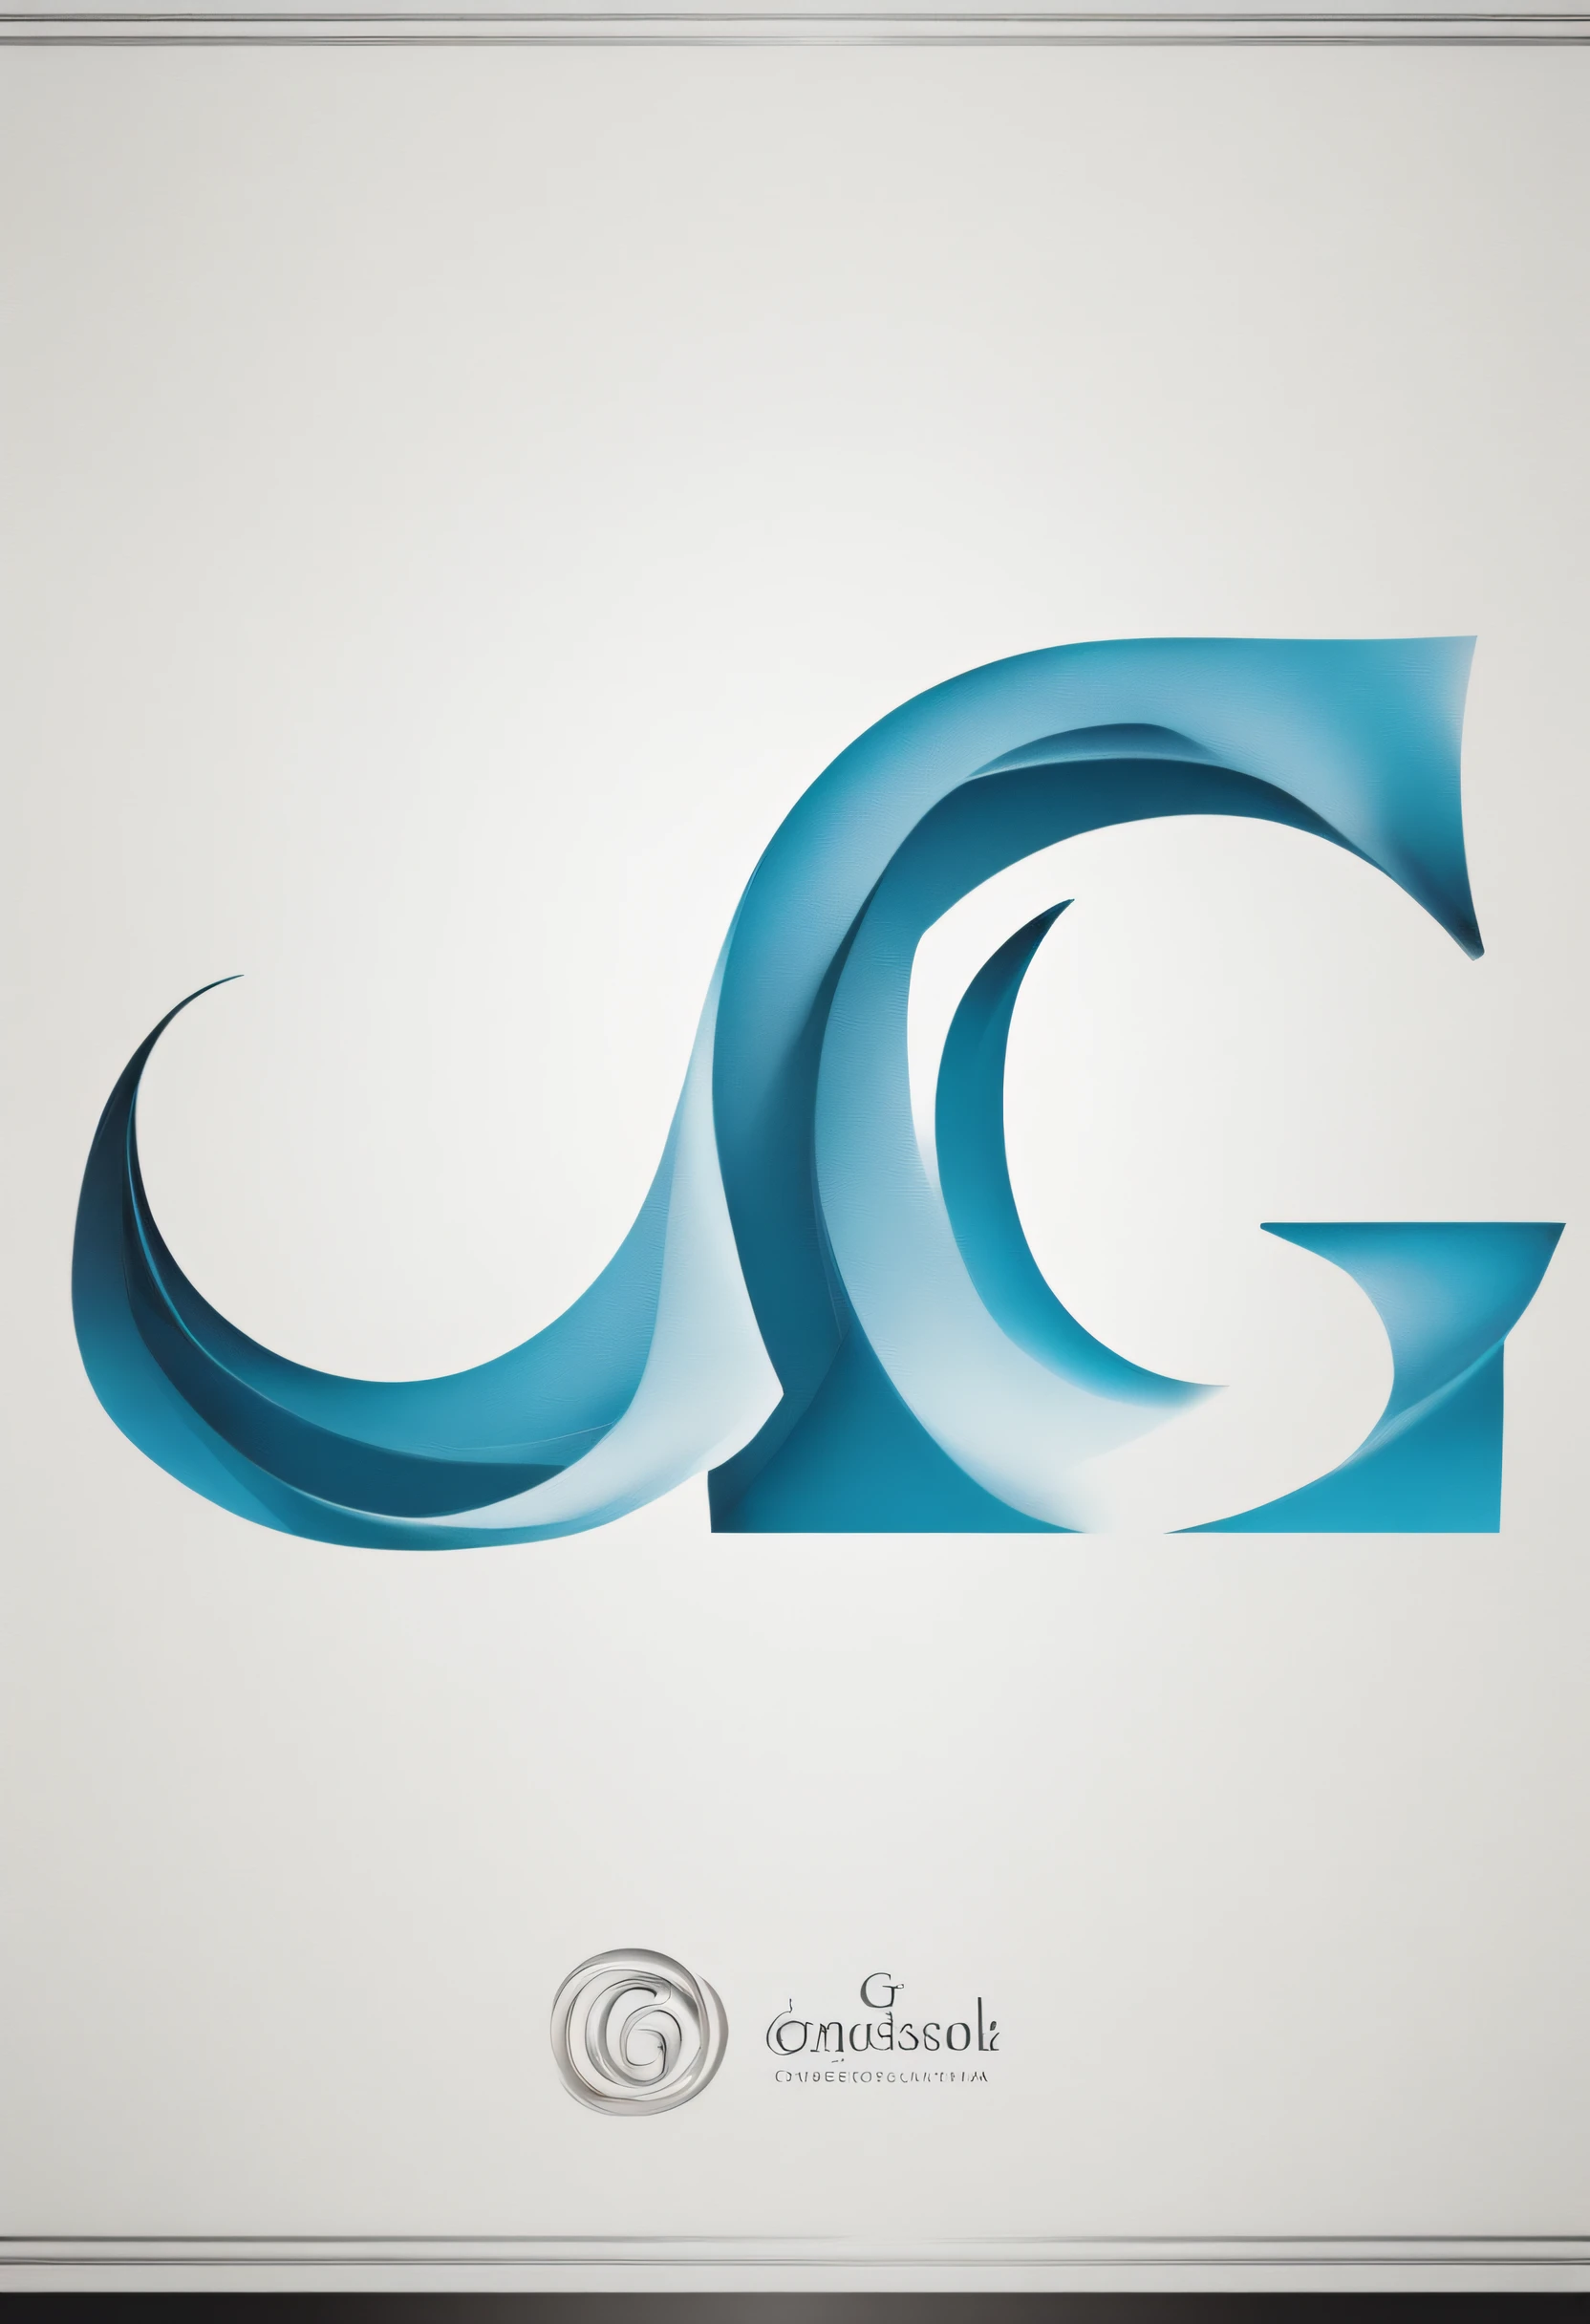 Elegante logotipo da letra g